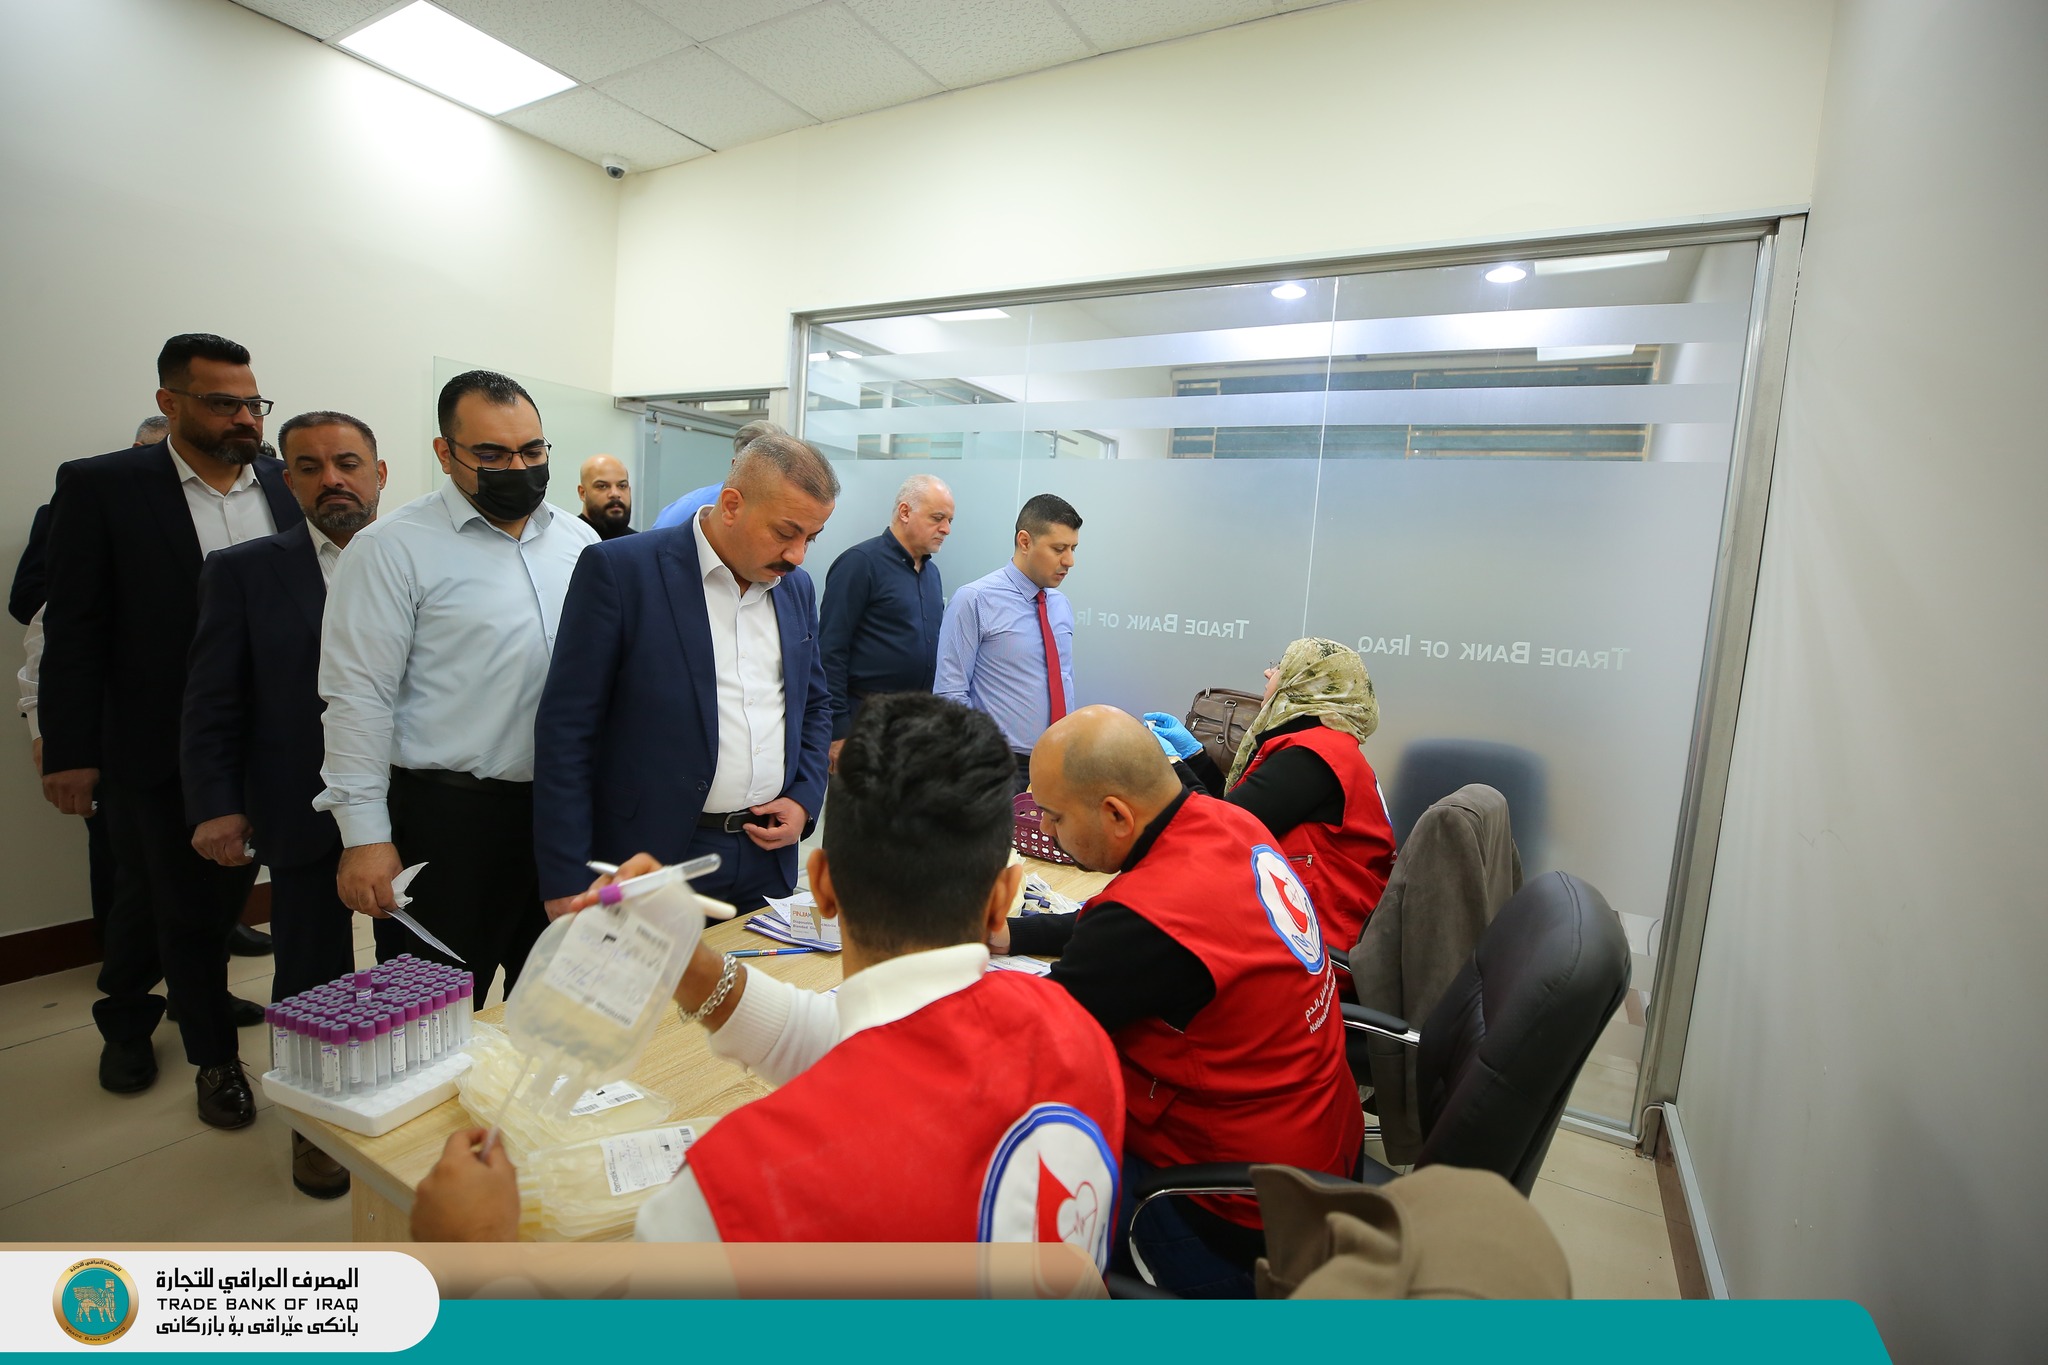 أقام المصرف العراقي للتجارة TBI بالتنسيق مع المركز الوطني لنقل الدم حملة لموظفي المصرف للتبرع بالدم